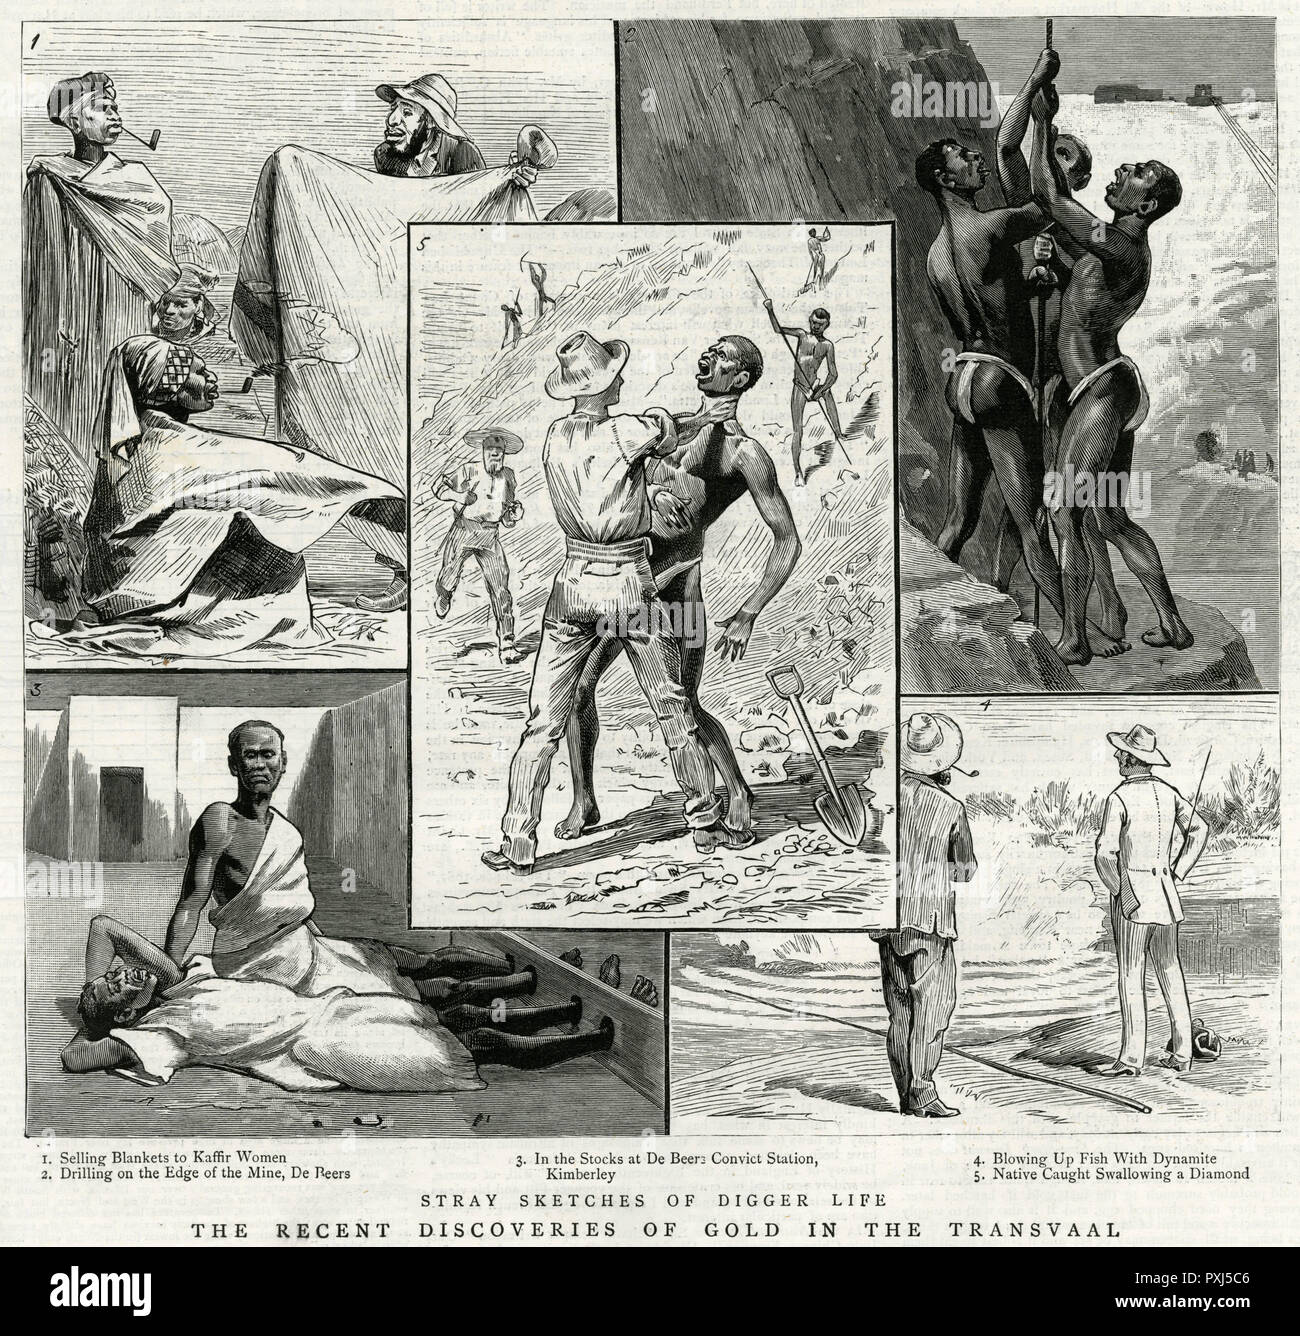 Diverses scènes montrant le mauvais traitement des travailleurs noirs dans les mines de diamants d'Afrique du Sud. Date : 1887 Banque D'Images